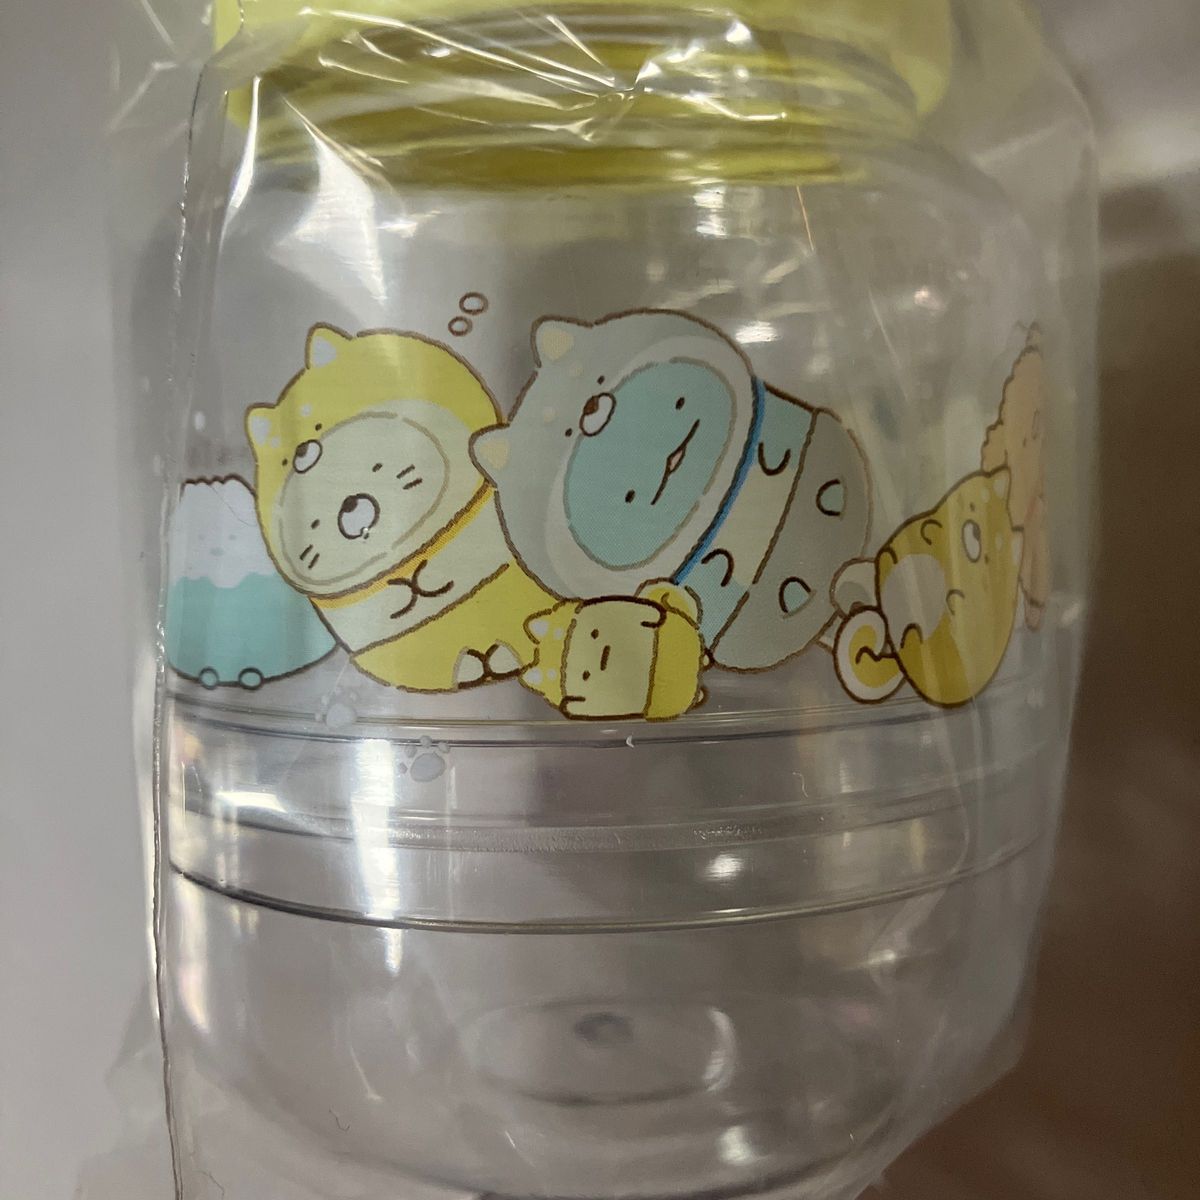 新品未開封 2個セット すみっコぐらし こいぬといぬごっこ 哺乳瓶型小物入れ かわいい 硬いプラスチック製 赤ちゃんベビーイラスト